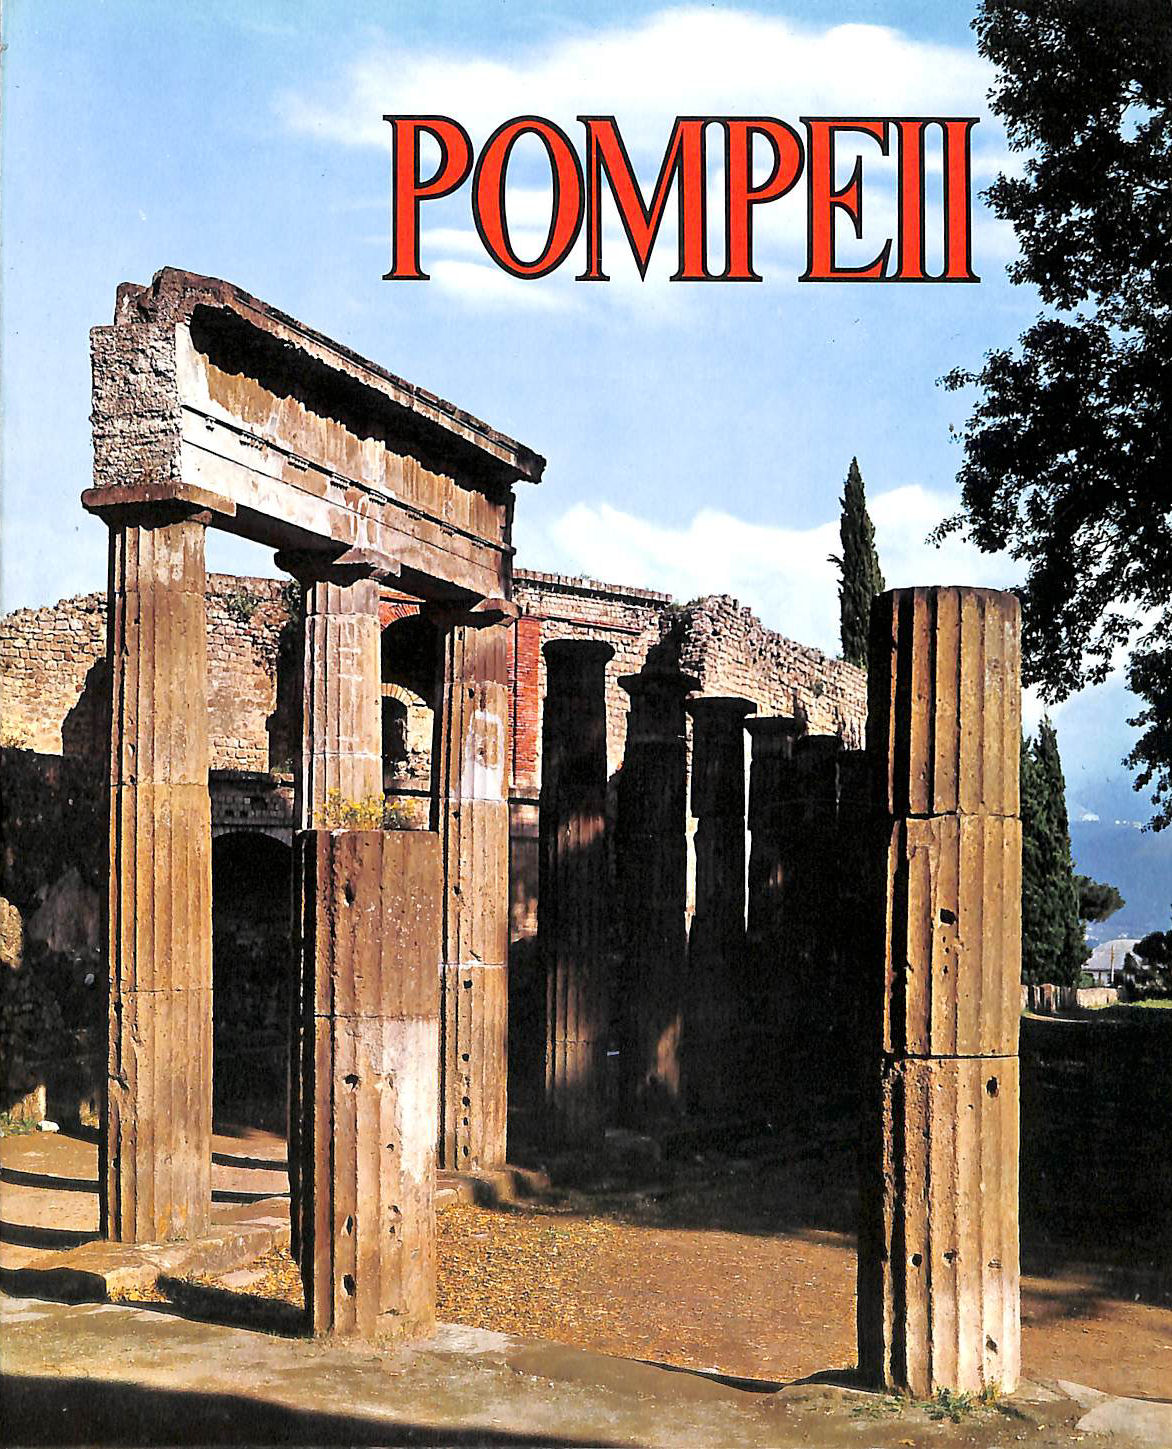 NONE GIVEN - Pompeii